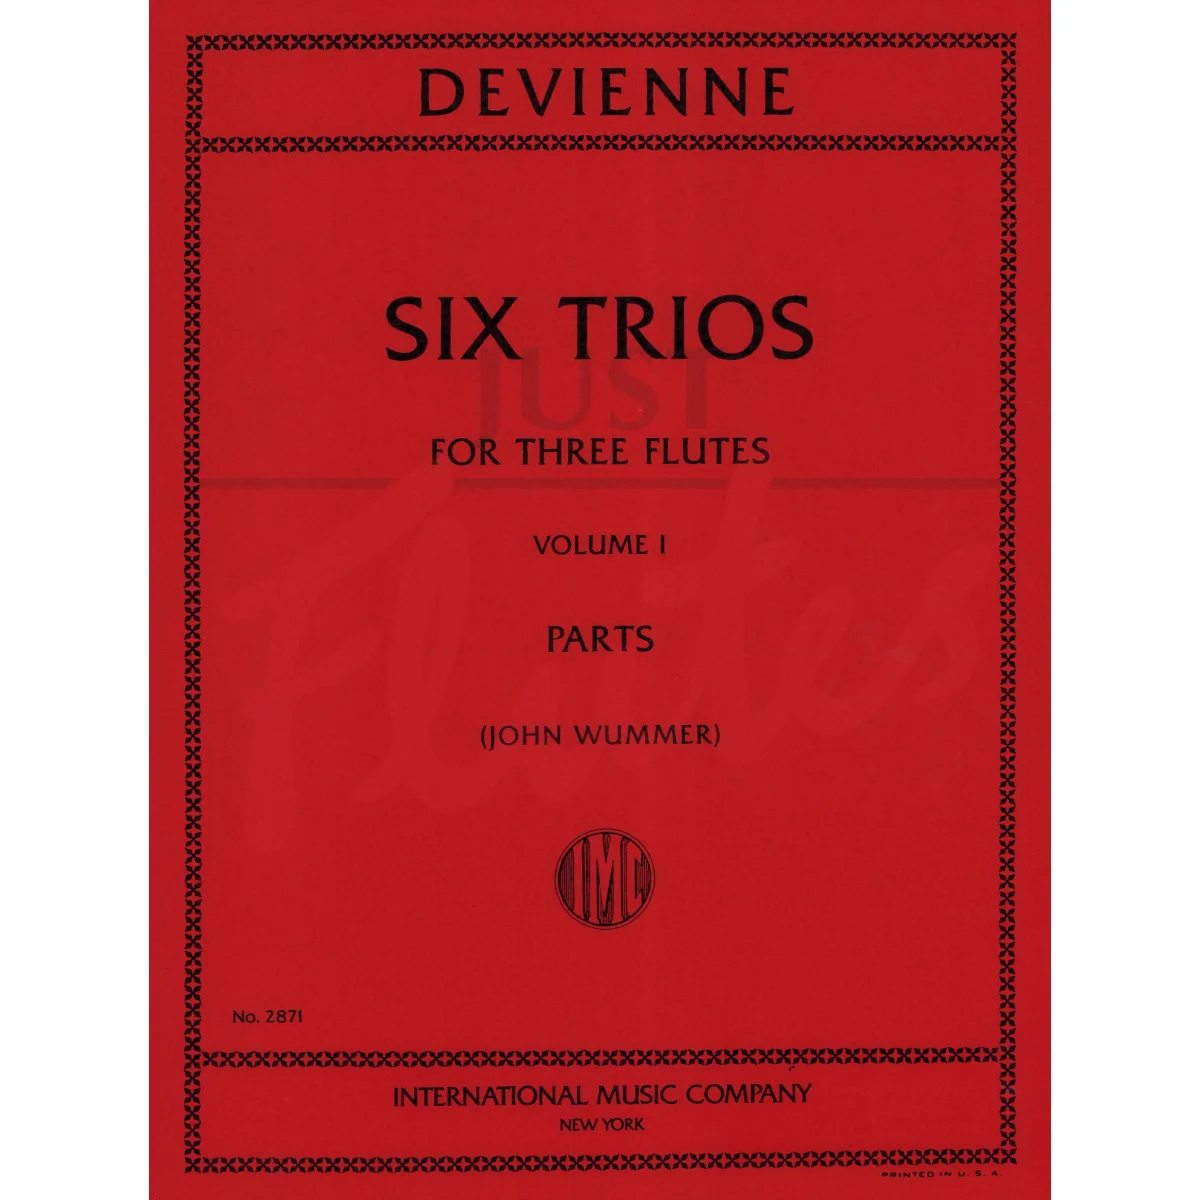 Six Trios for Three Flutes, Volume 1